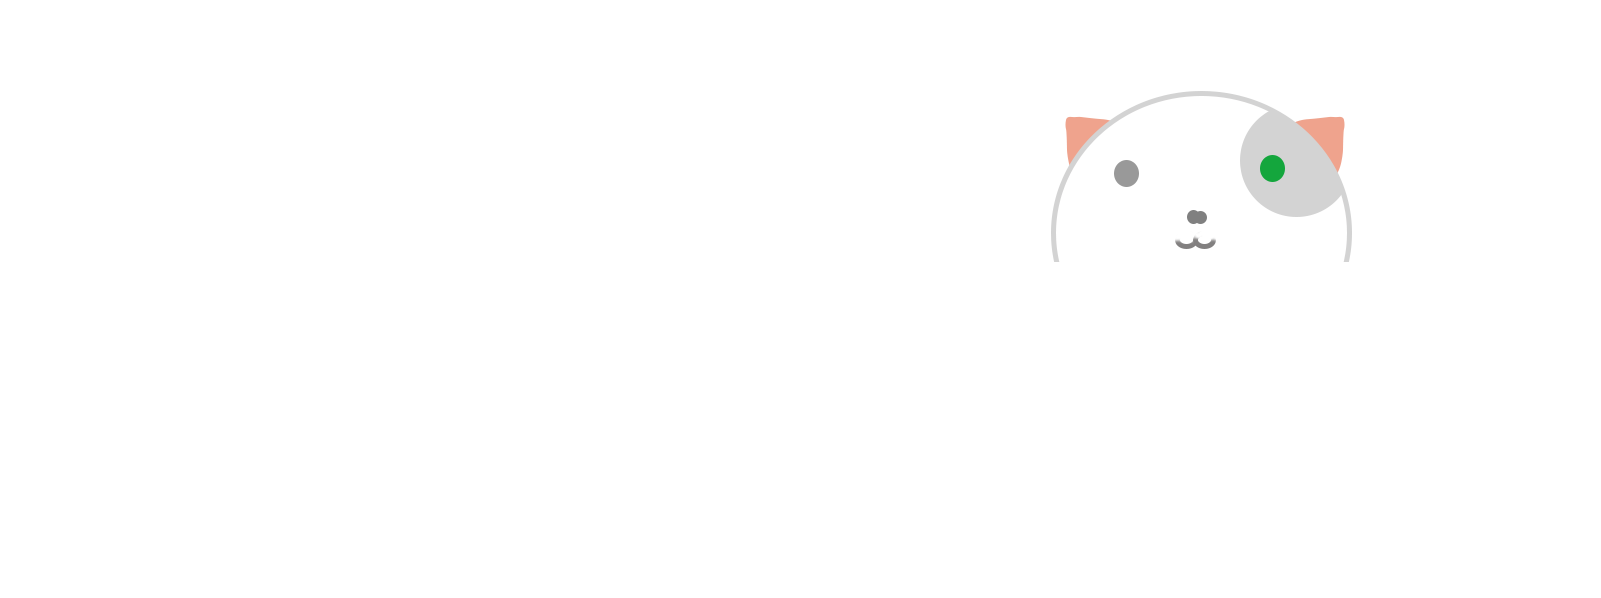 Apibug - 互联网技术爱好者